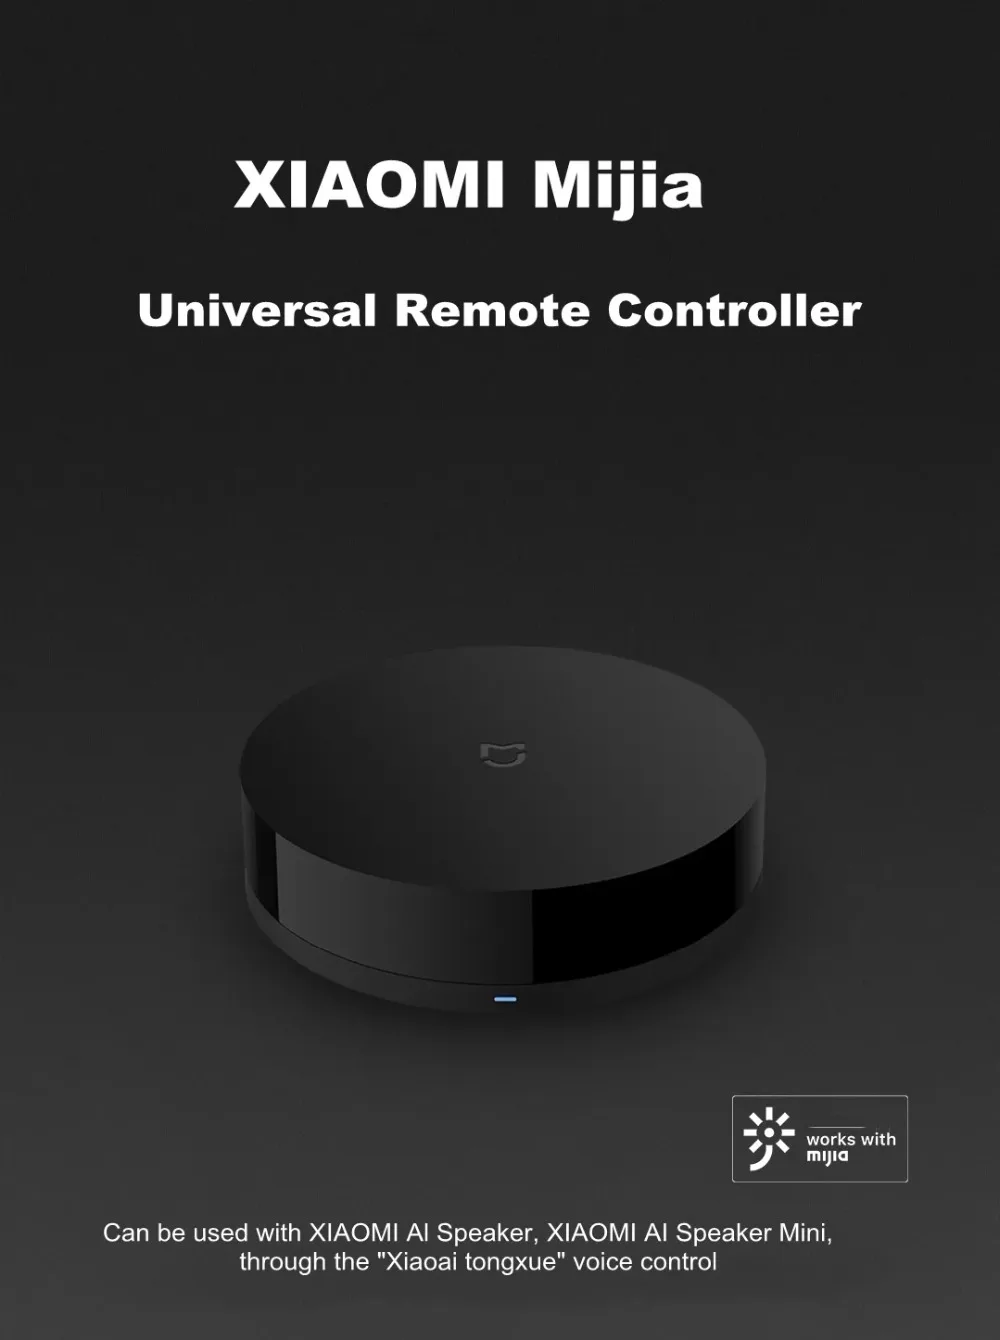 Xiao mi jia универсальный пульт дистанционного управления Лер переключатель умный WiFi mi Home приложение дистанционное управление Surpport AI динамик Голосовое управление